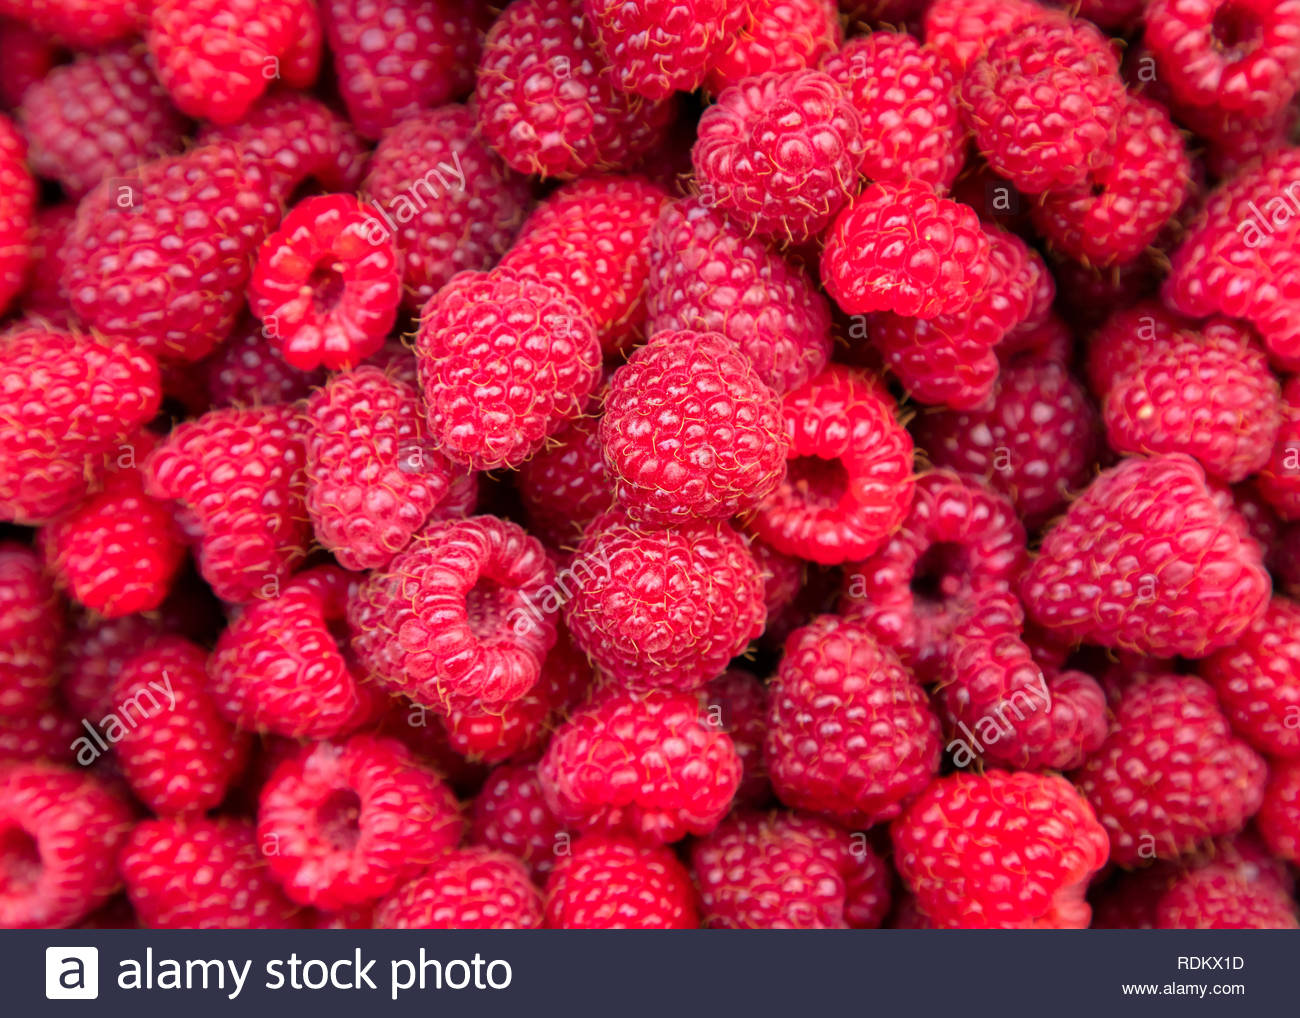 Freshly Picked Organic Home Grown Sweet Raspberries Ripe Red